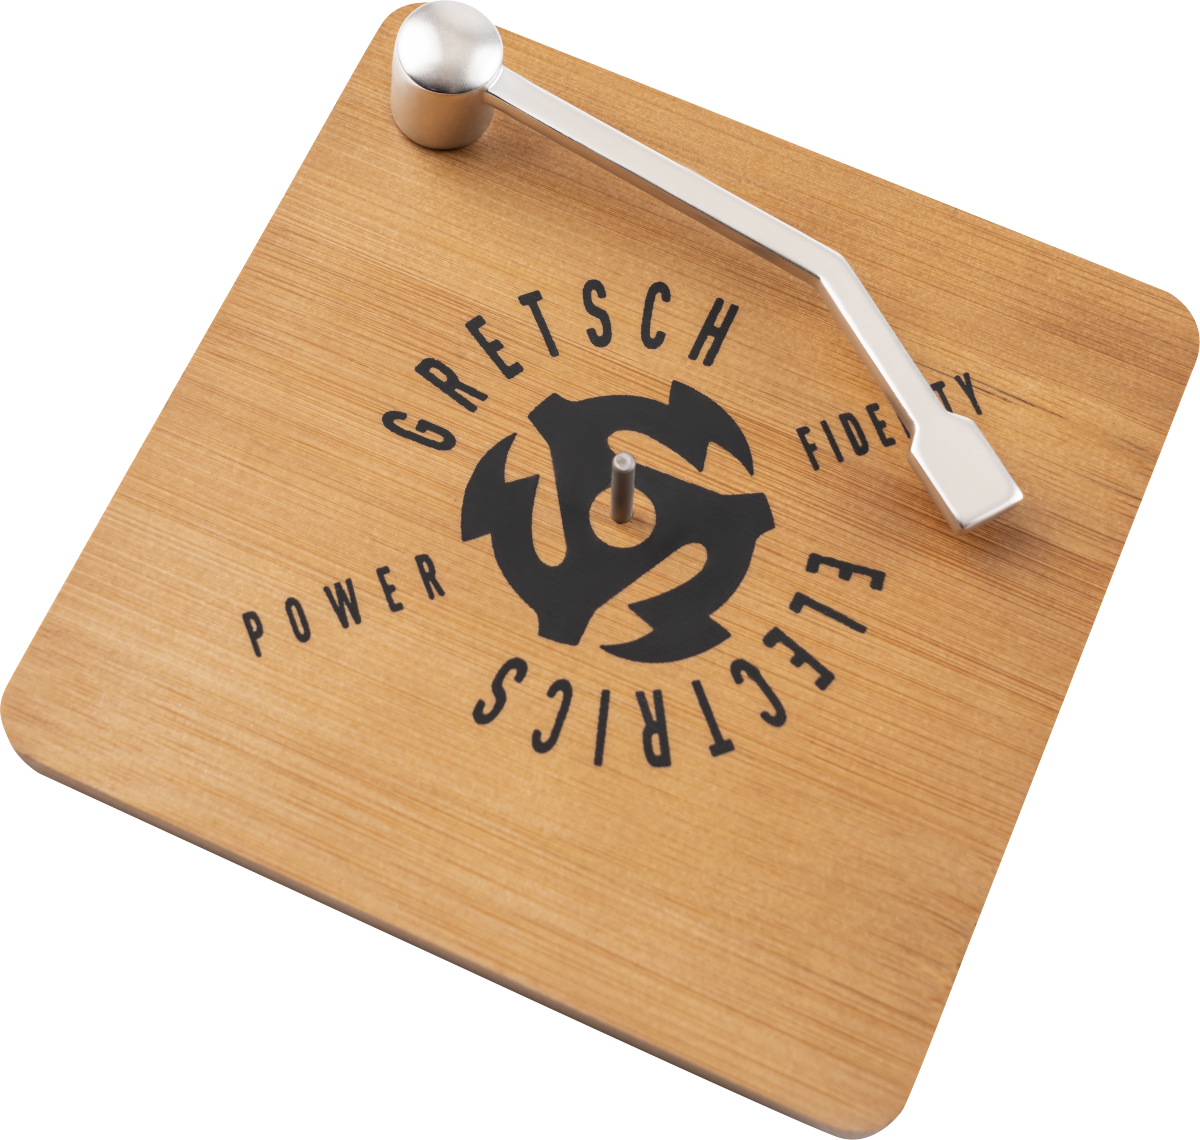 Gretsch Power & Fidelity Vinyl Coaster Set - Dessous De Verre & Sous Bock - Variation 2